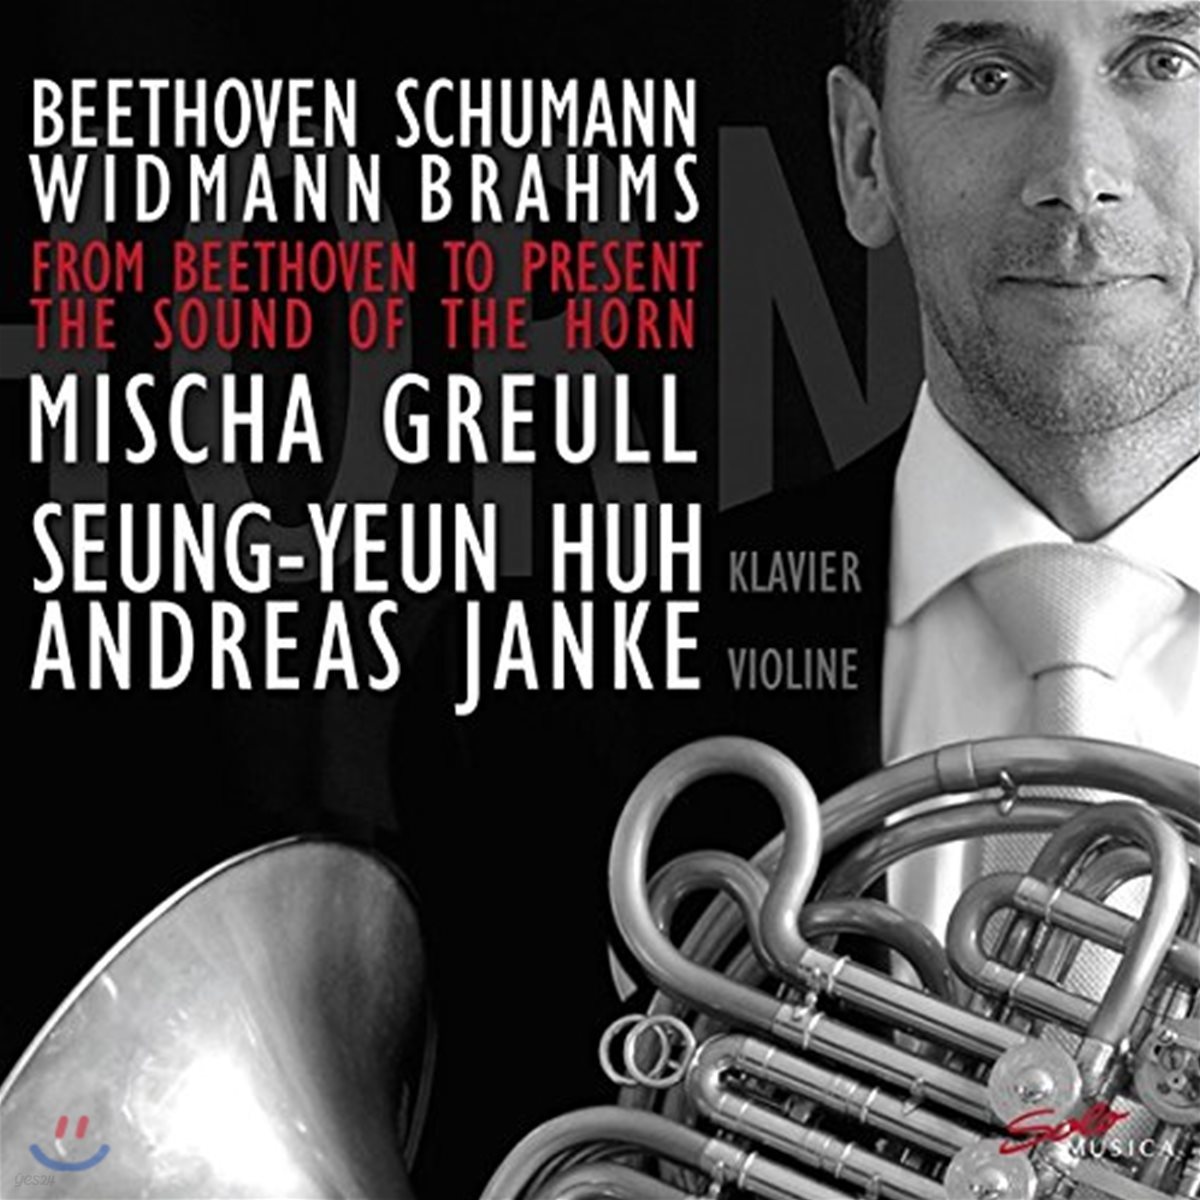 허승연 / Mischa Greull 브람스: 호른과 바이올린, 피아노를 위한 삼중주 / 베토벤 / 슈만 / 비트만 (From Beethoven To Present - The Sound Of The Horn: Schumann / Brahms / Widmann)